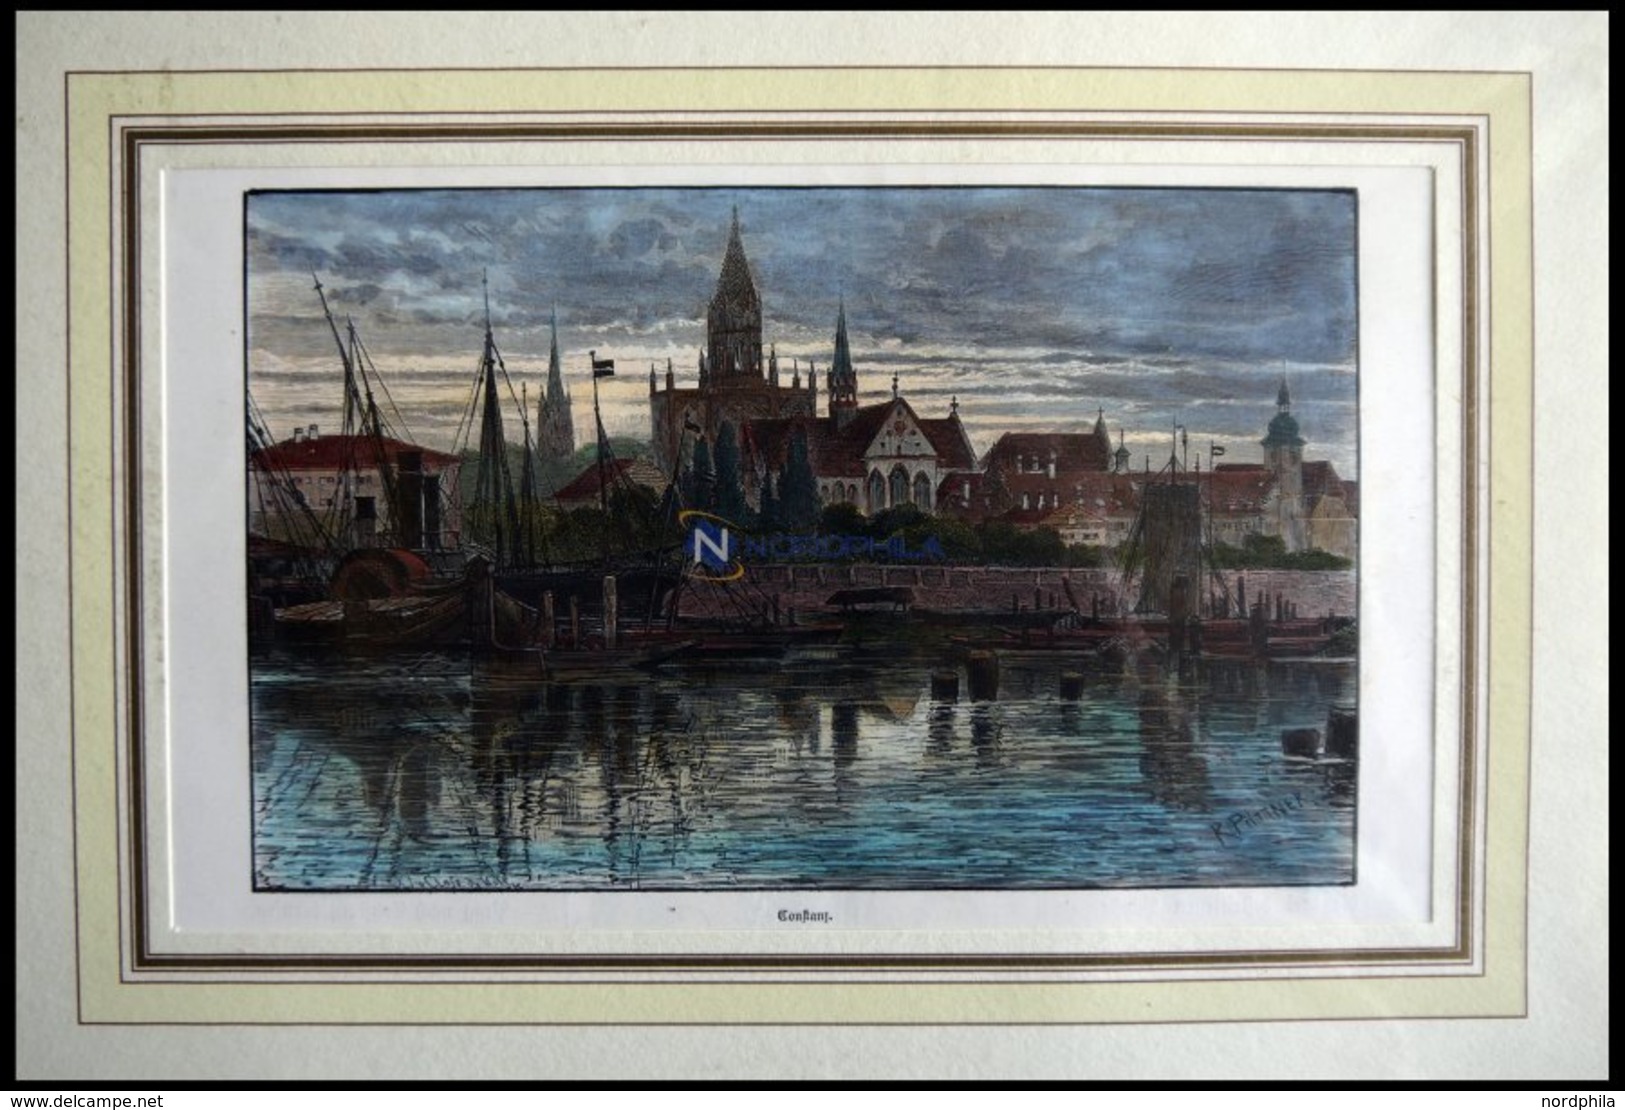 KONSTANZ, Teilansicht übers Wasser Gesehen, Kolorierter Holzstich Von Püttner Um 1880 - Litografia